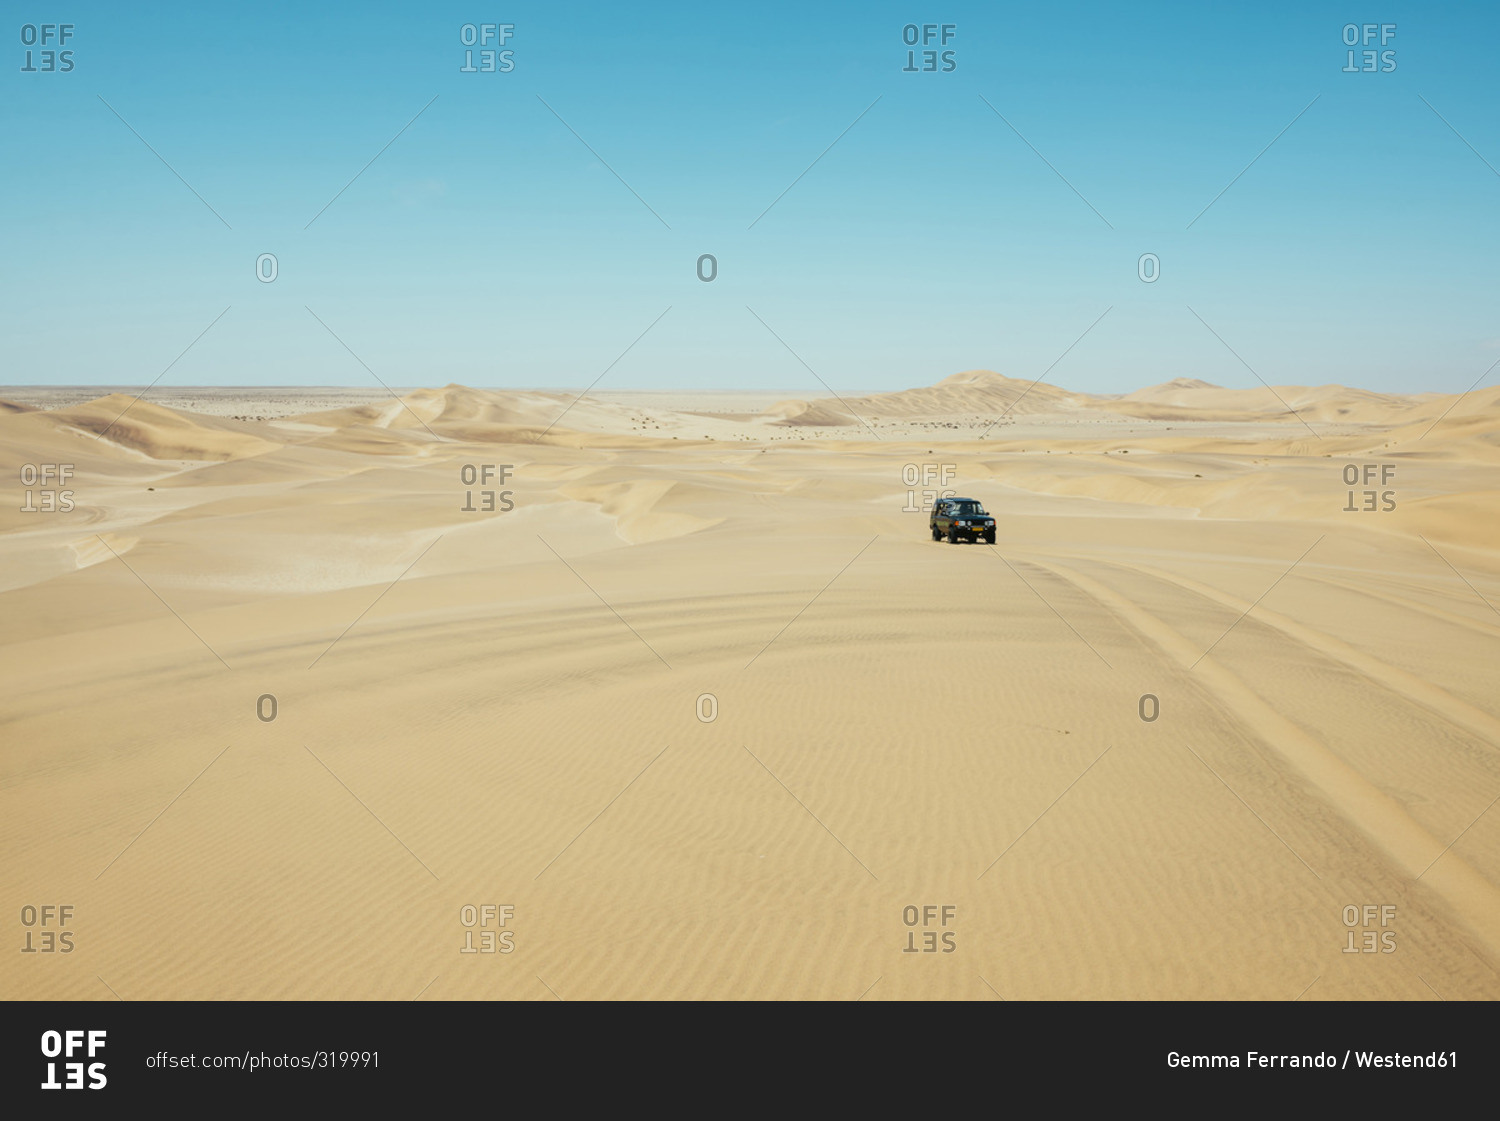 Namibia, Namib desert, Swakopmund, 4x4 car driving among the dunes in the desert